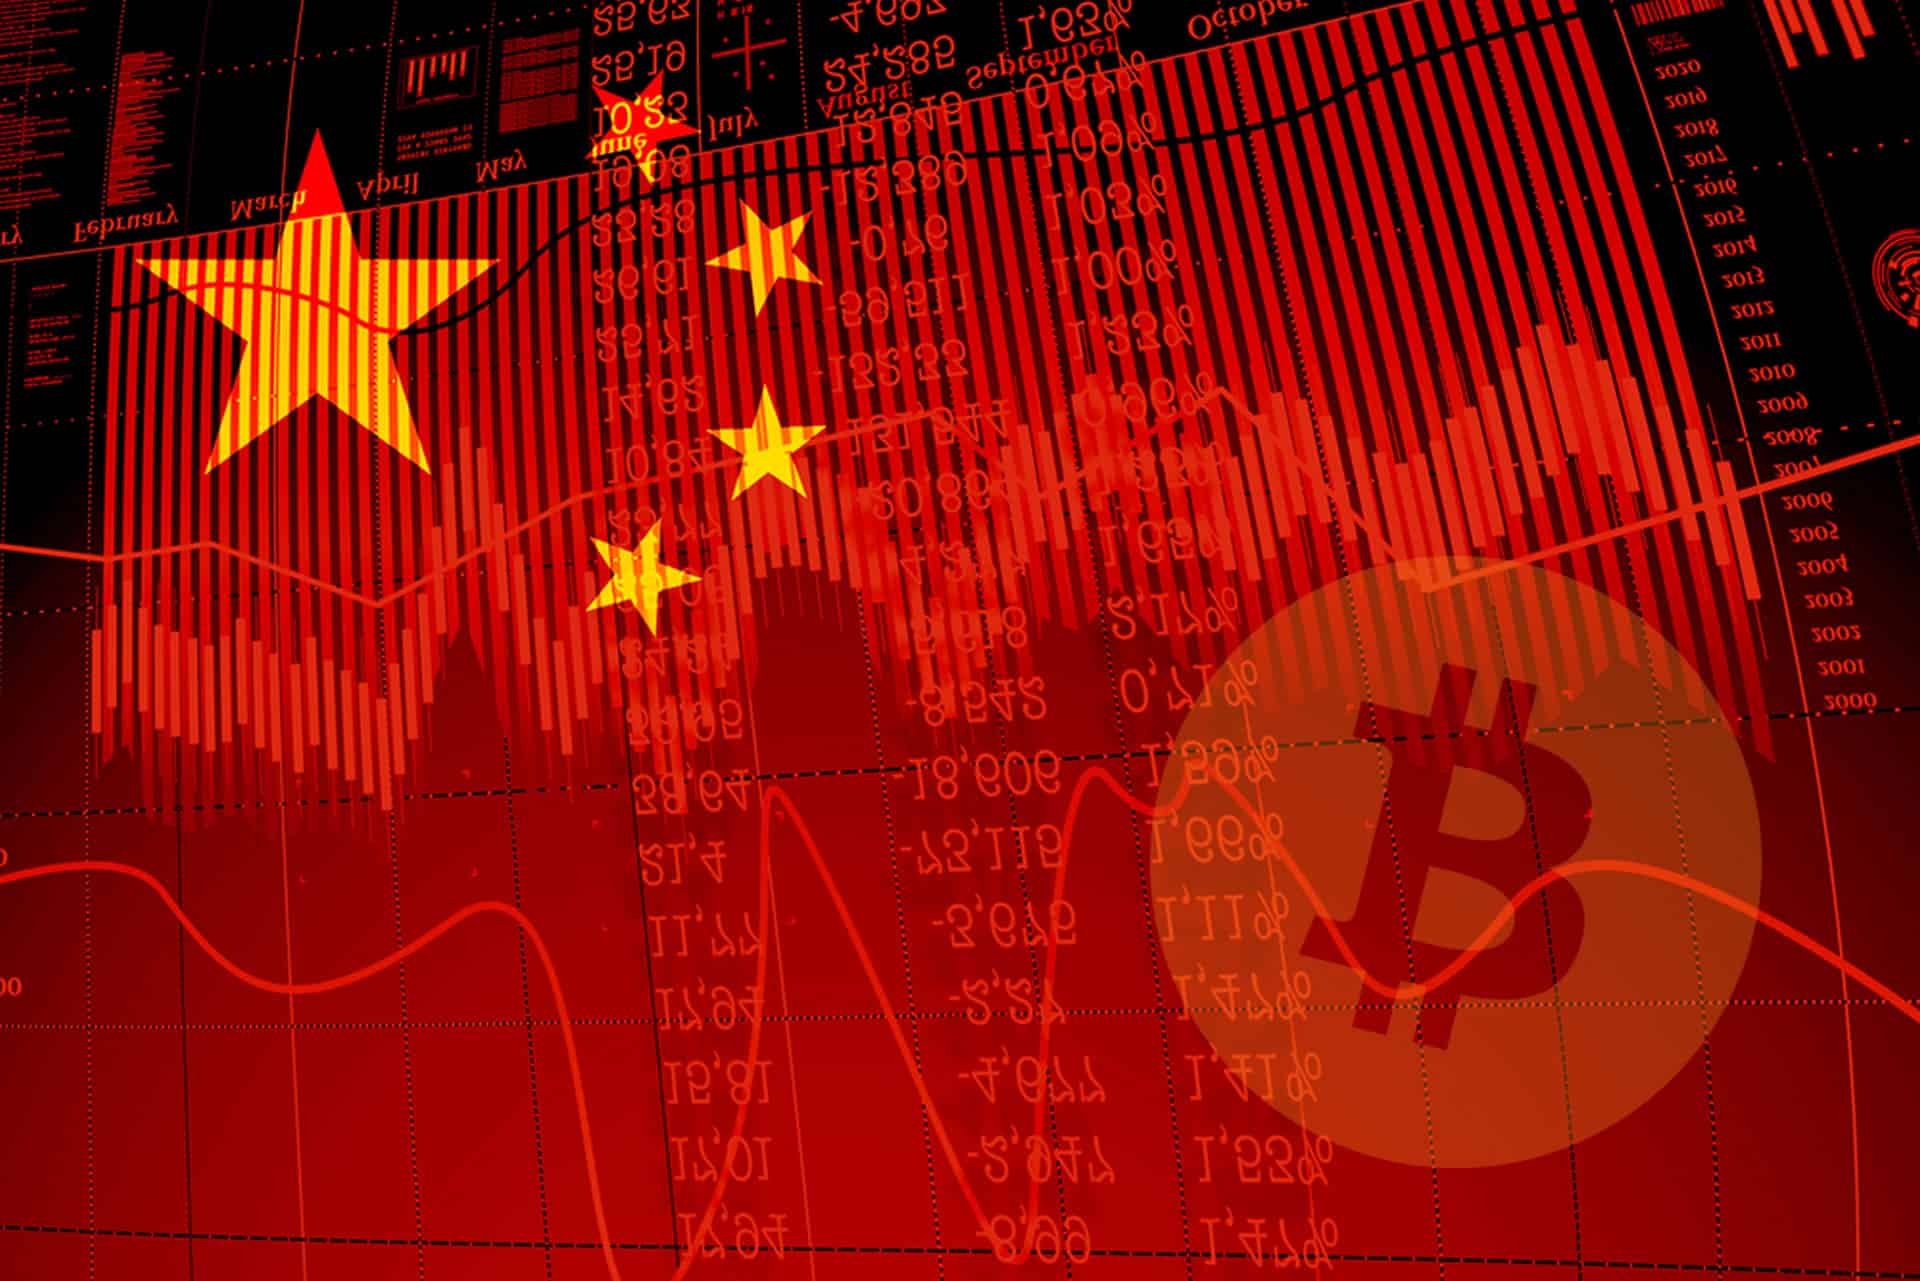 China and Hong Kong Cracks Down on Crypto as Markets See Red